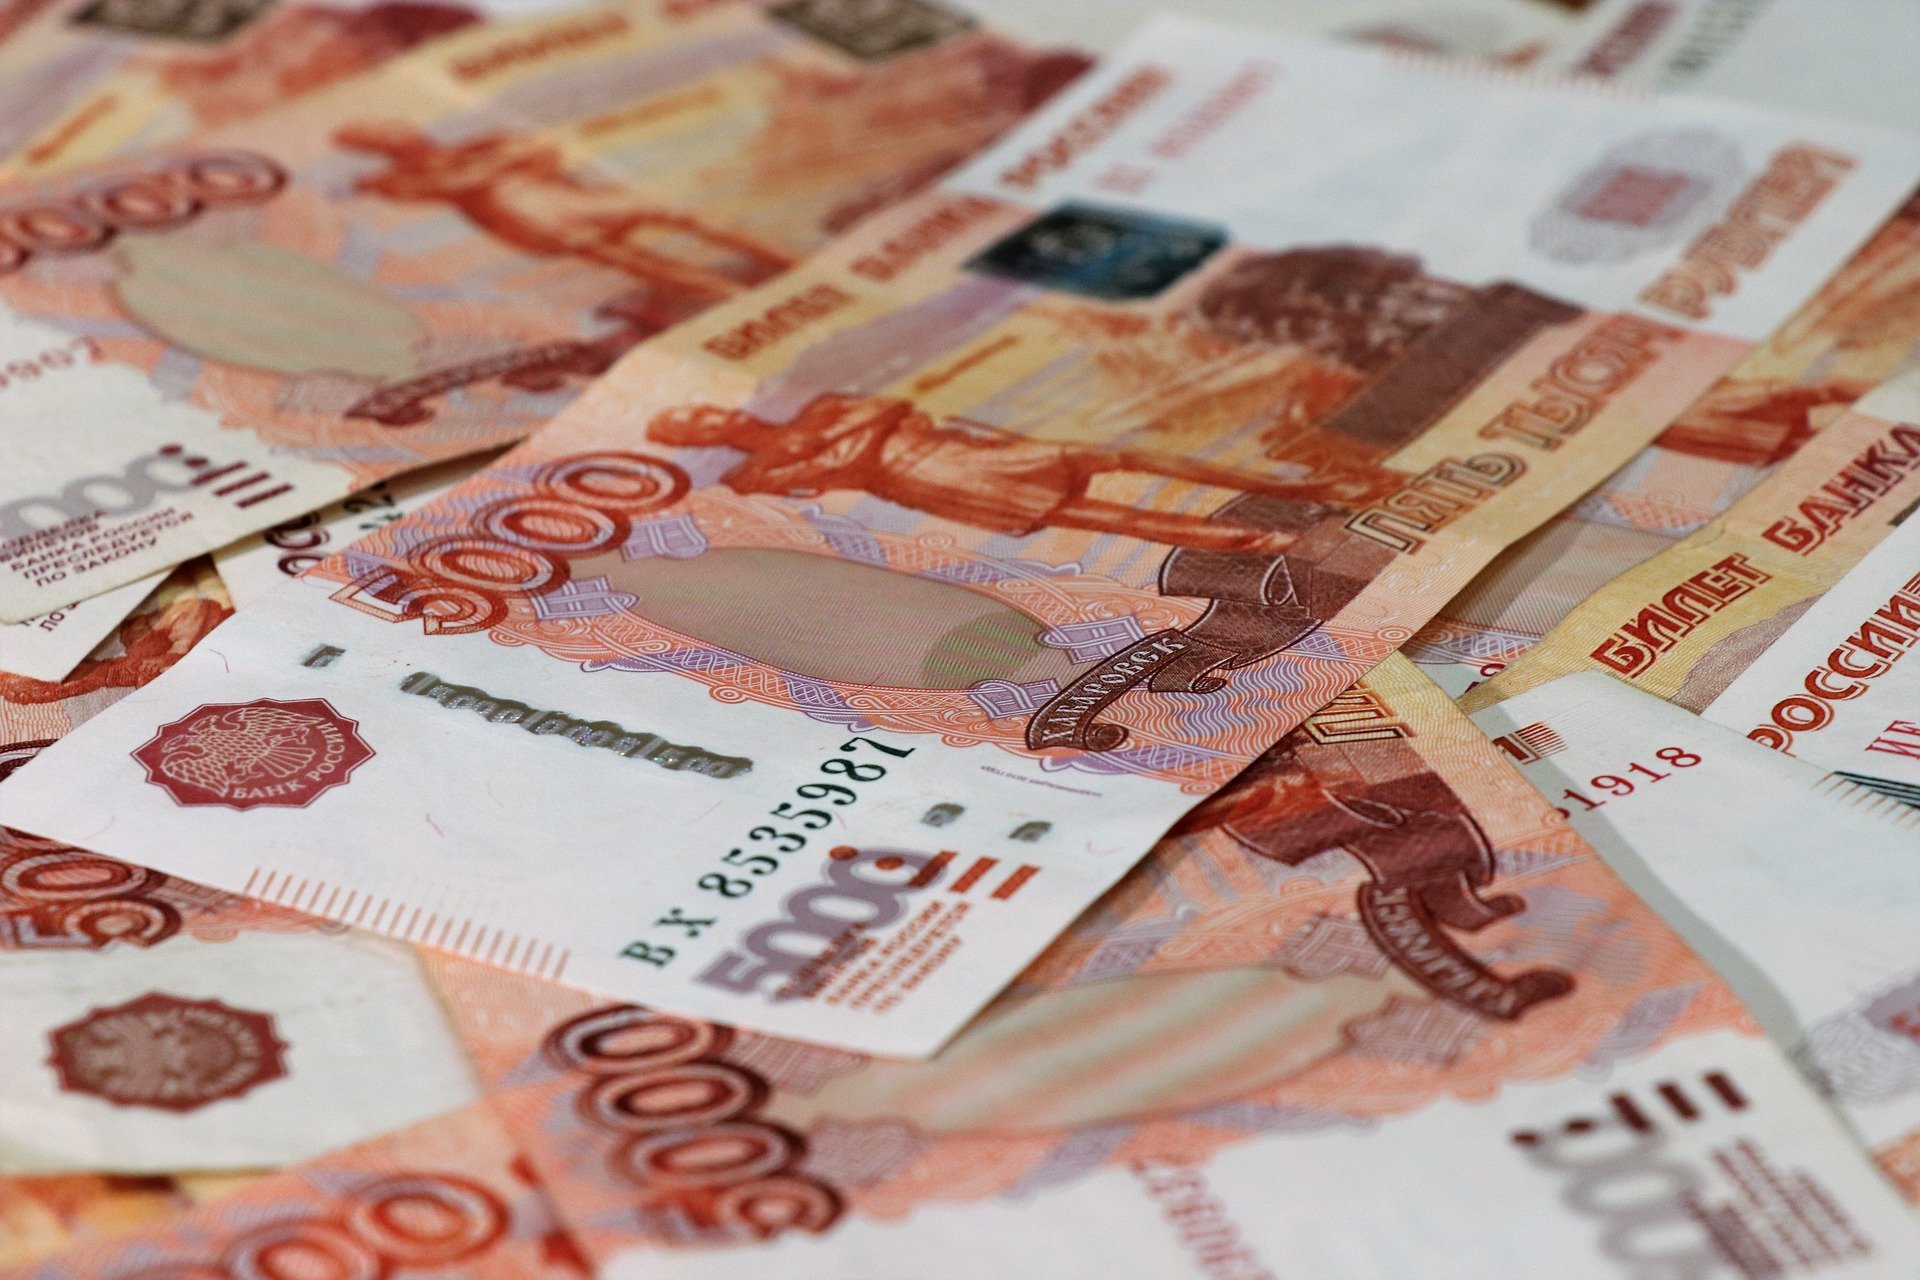 Venäjän hallitus on hyväksynyt Karjalalle 1,2 miljardin ruplan lainan infrastruktuurin kehittämiseen. Kuva: pixabay.com